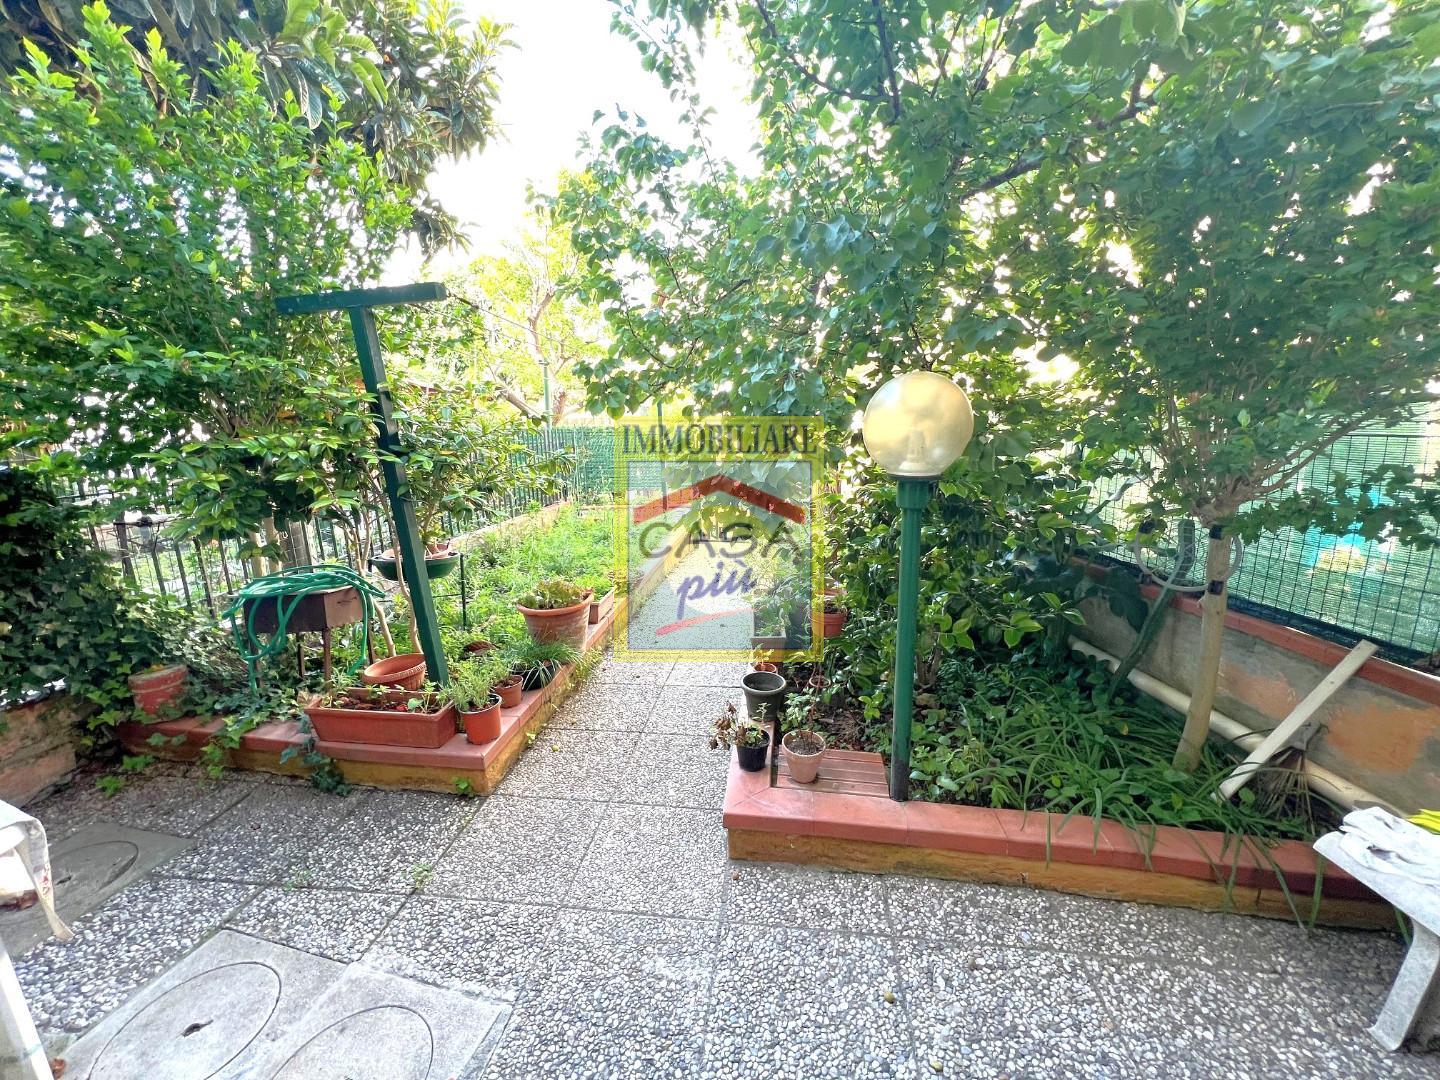 Casa indipendente con giardino, Pisa porta fiorentina